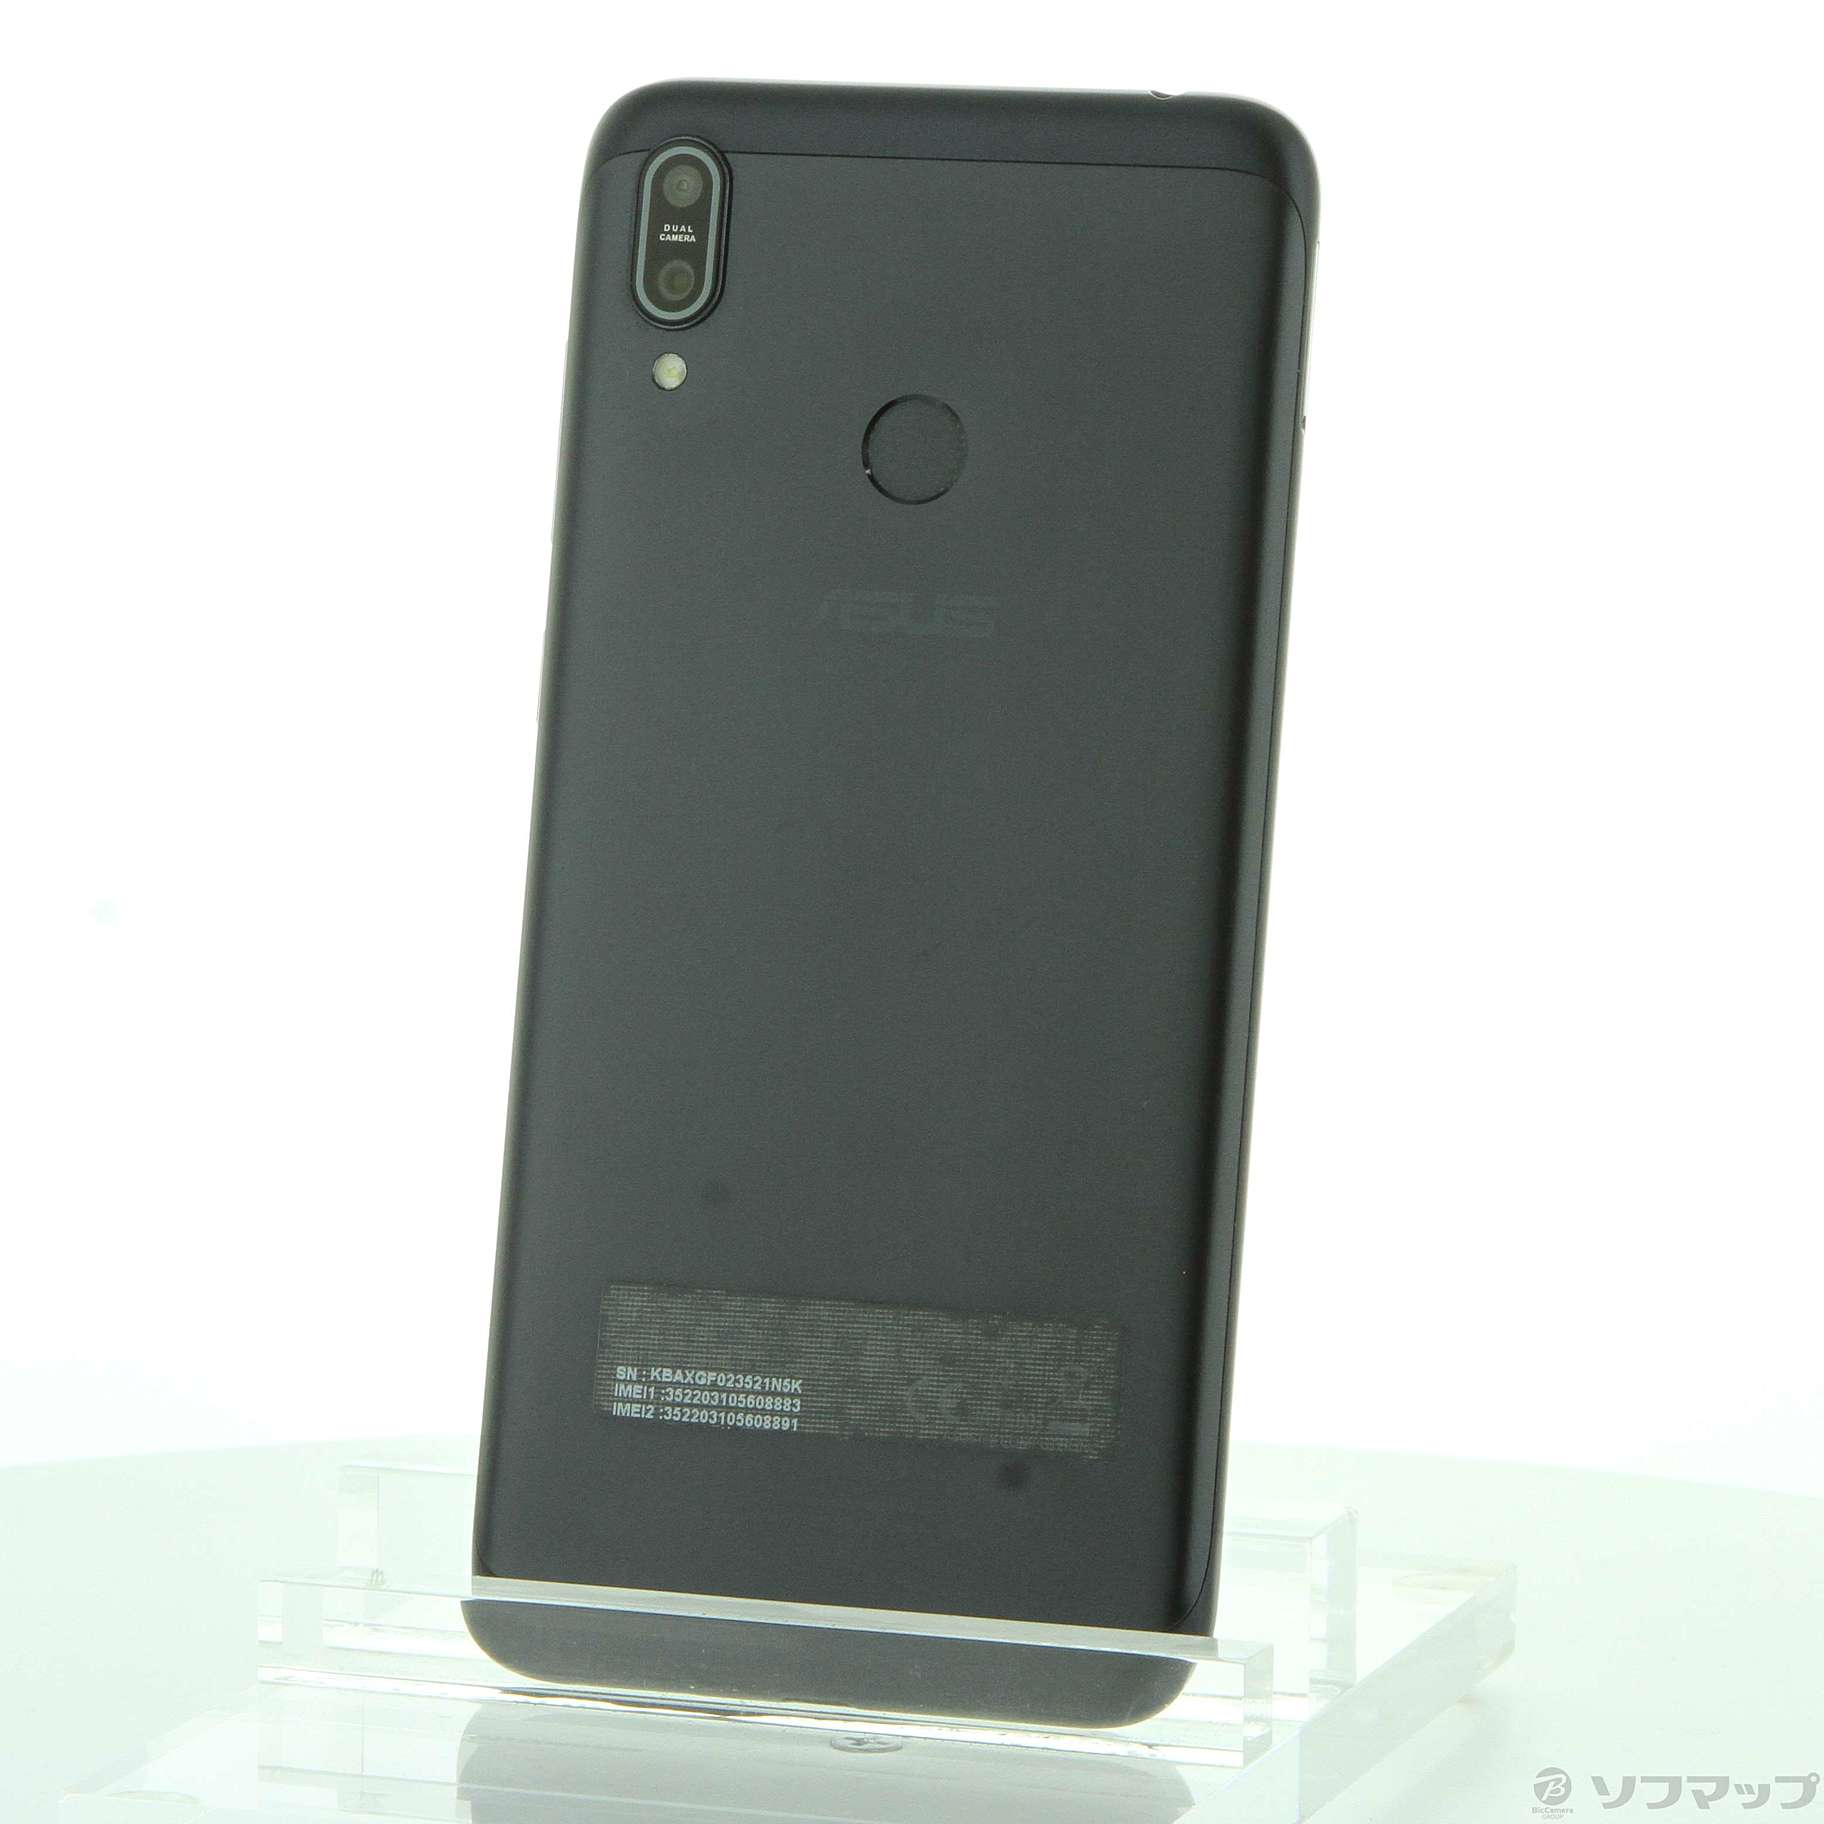 【新品未開封】Zenfone Max (M2) 64GB ミッドナイトブラック